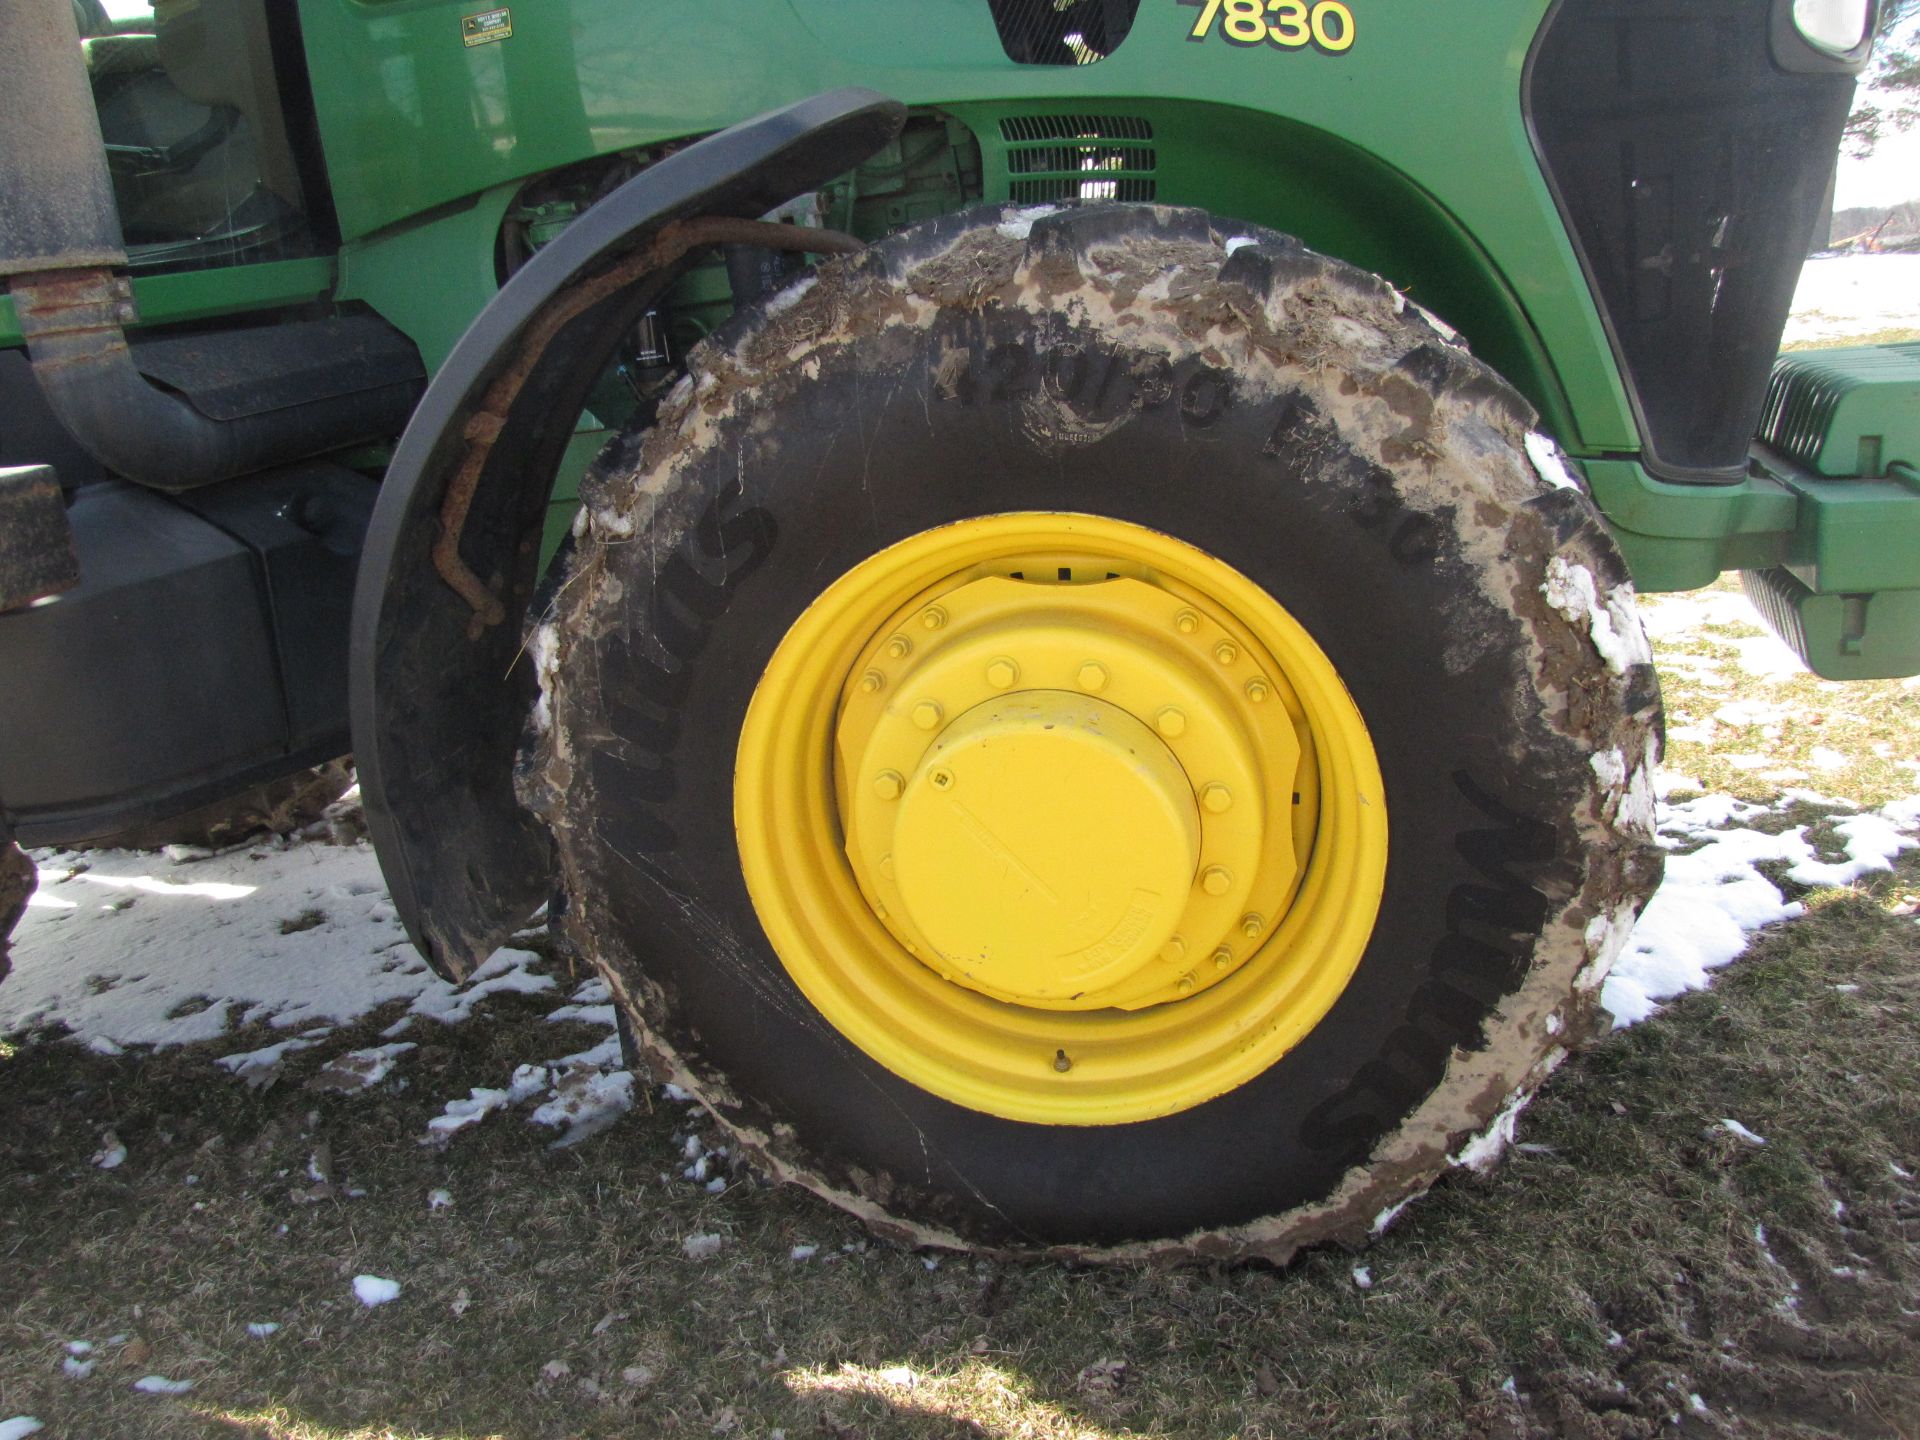 John Deere 7830 tractor - Image 8 of 43